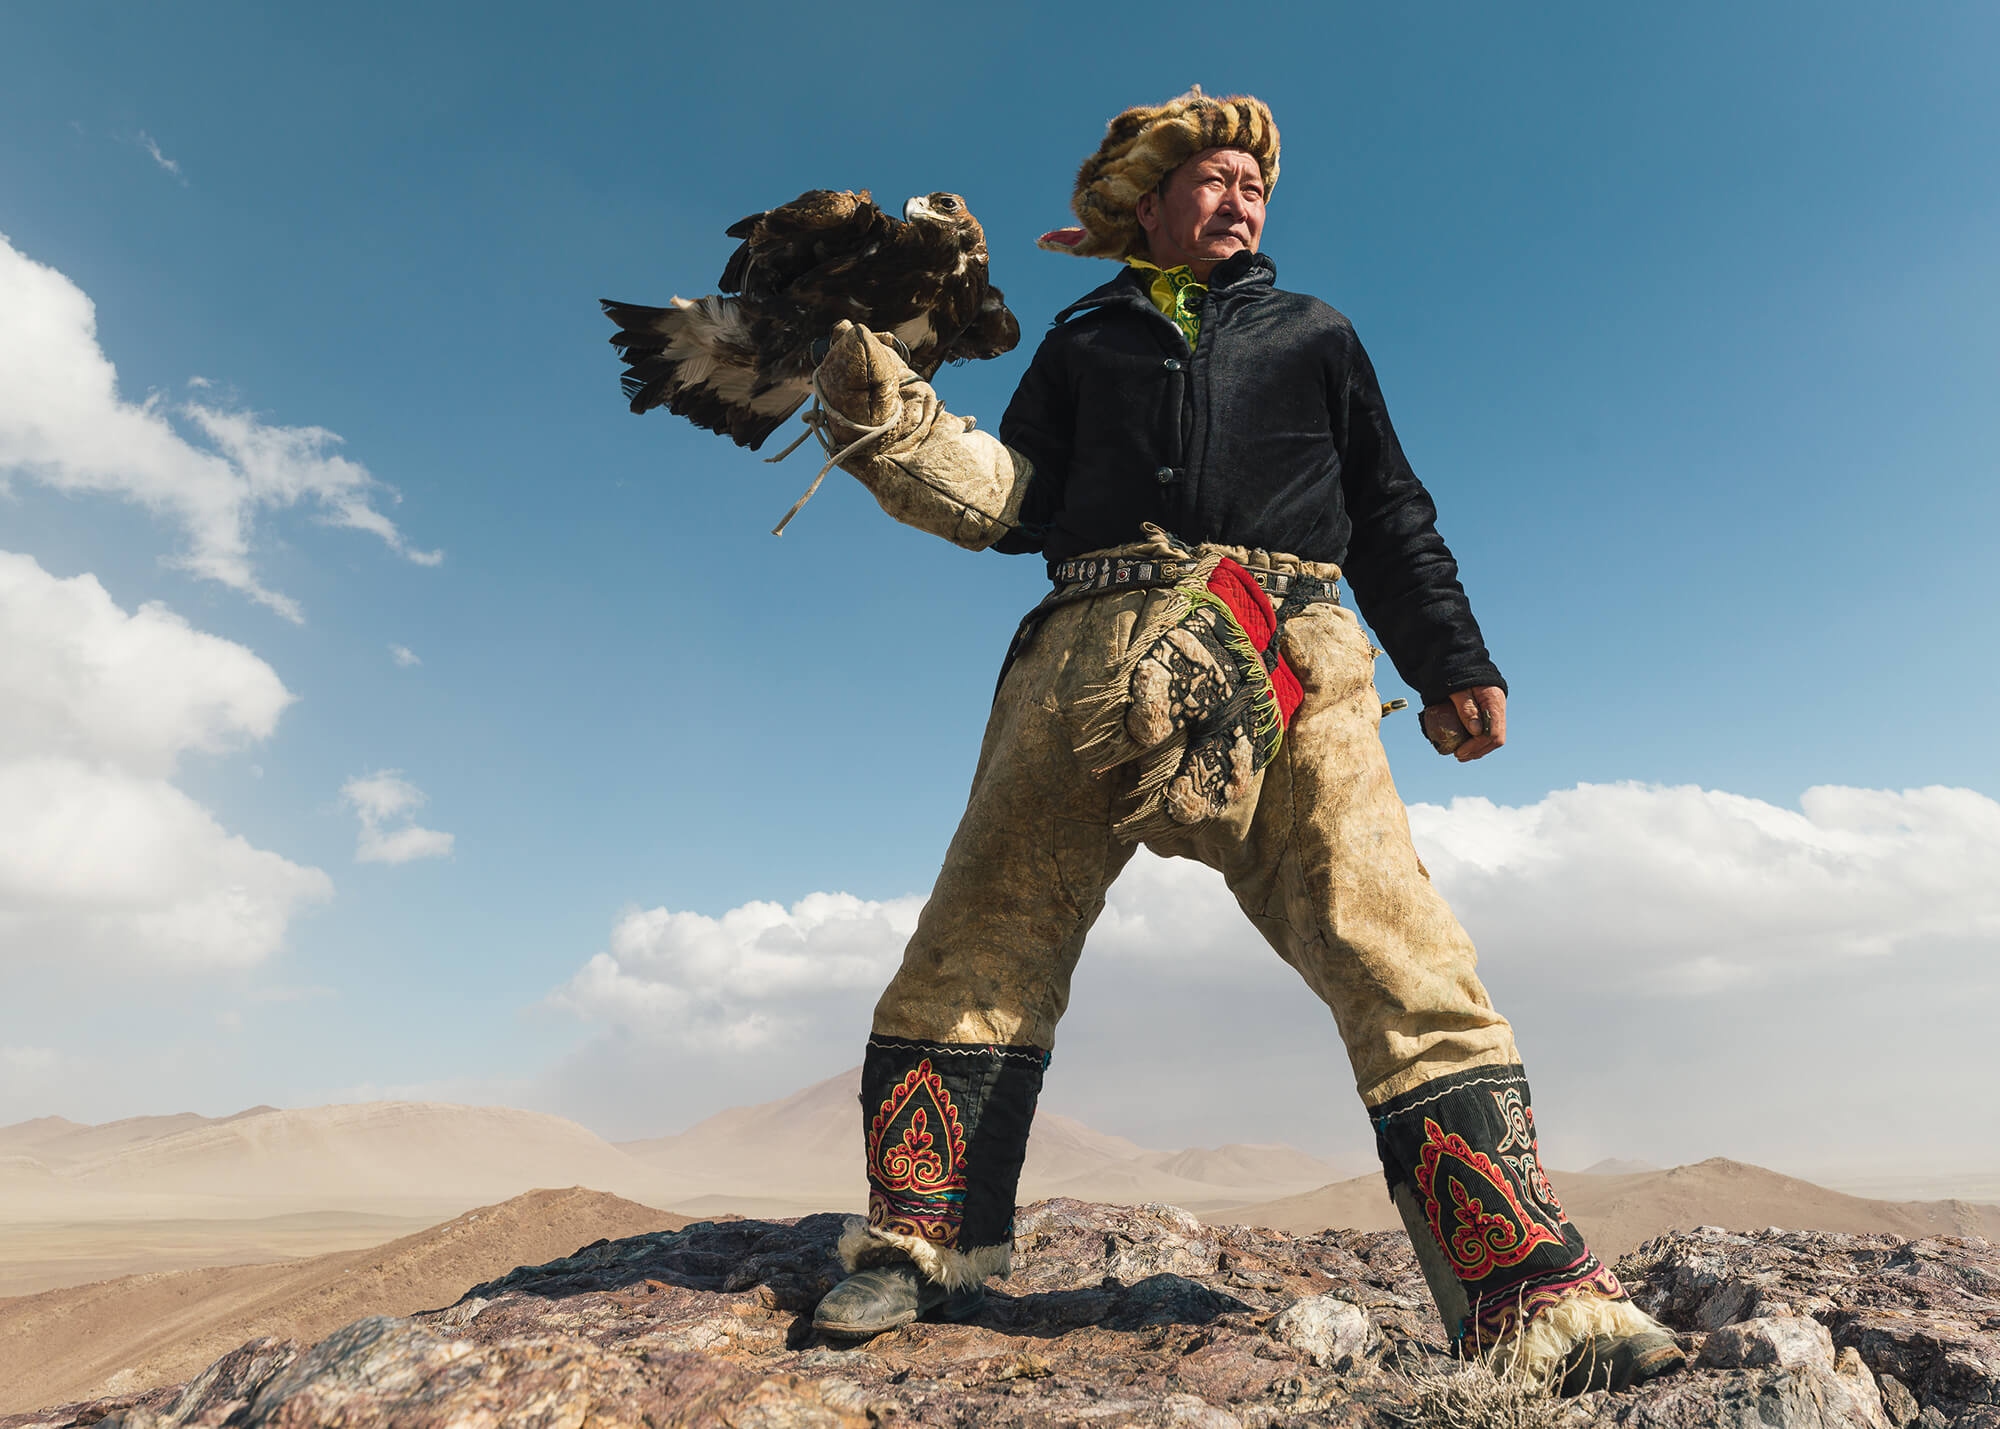 Kazakh eagle hunter Mongolia